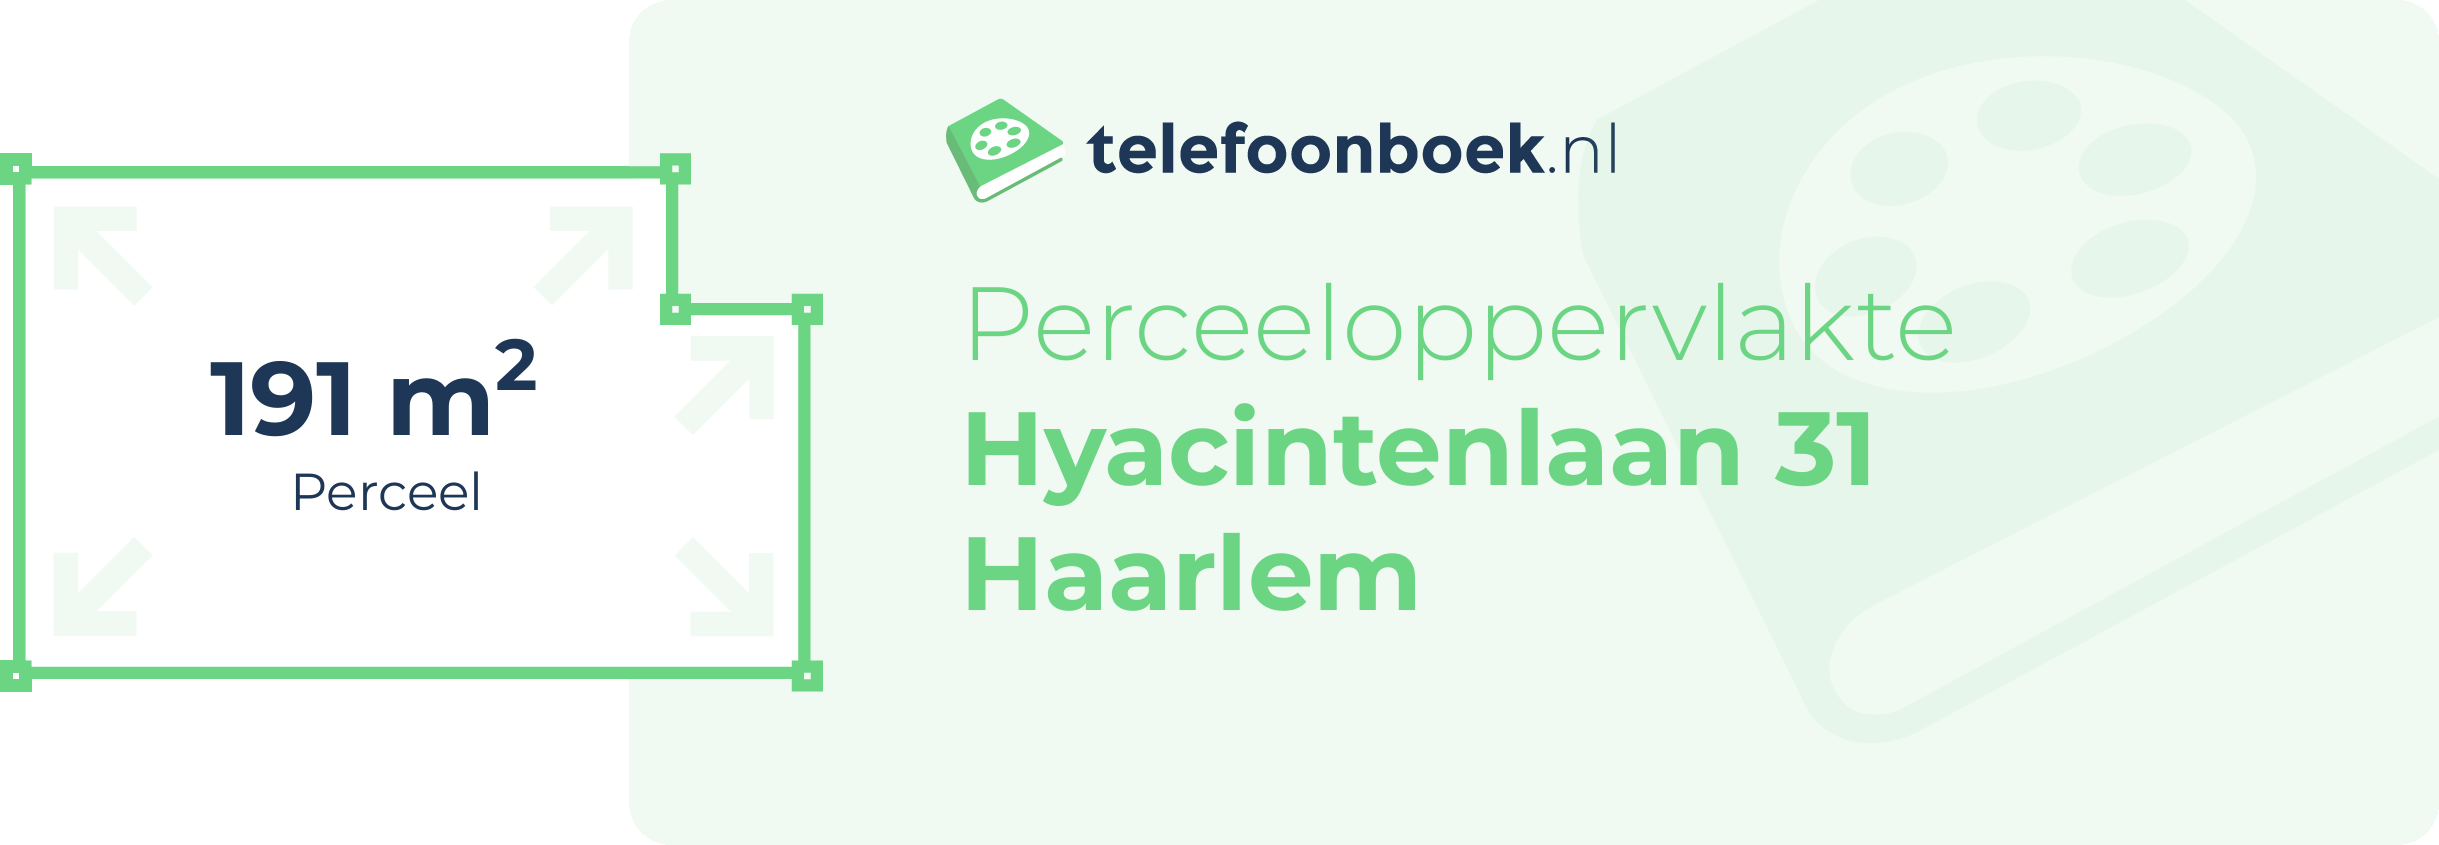 Perceeloppervlakte Hyacintenlaan 31 Haarlem